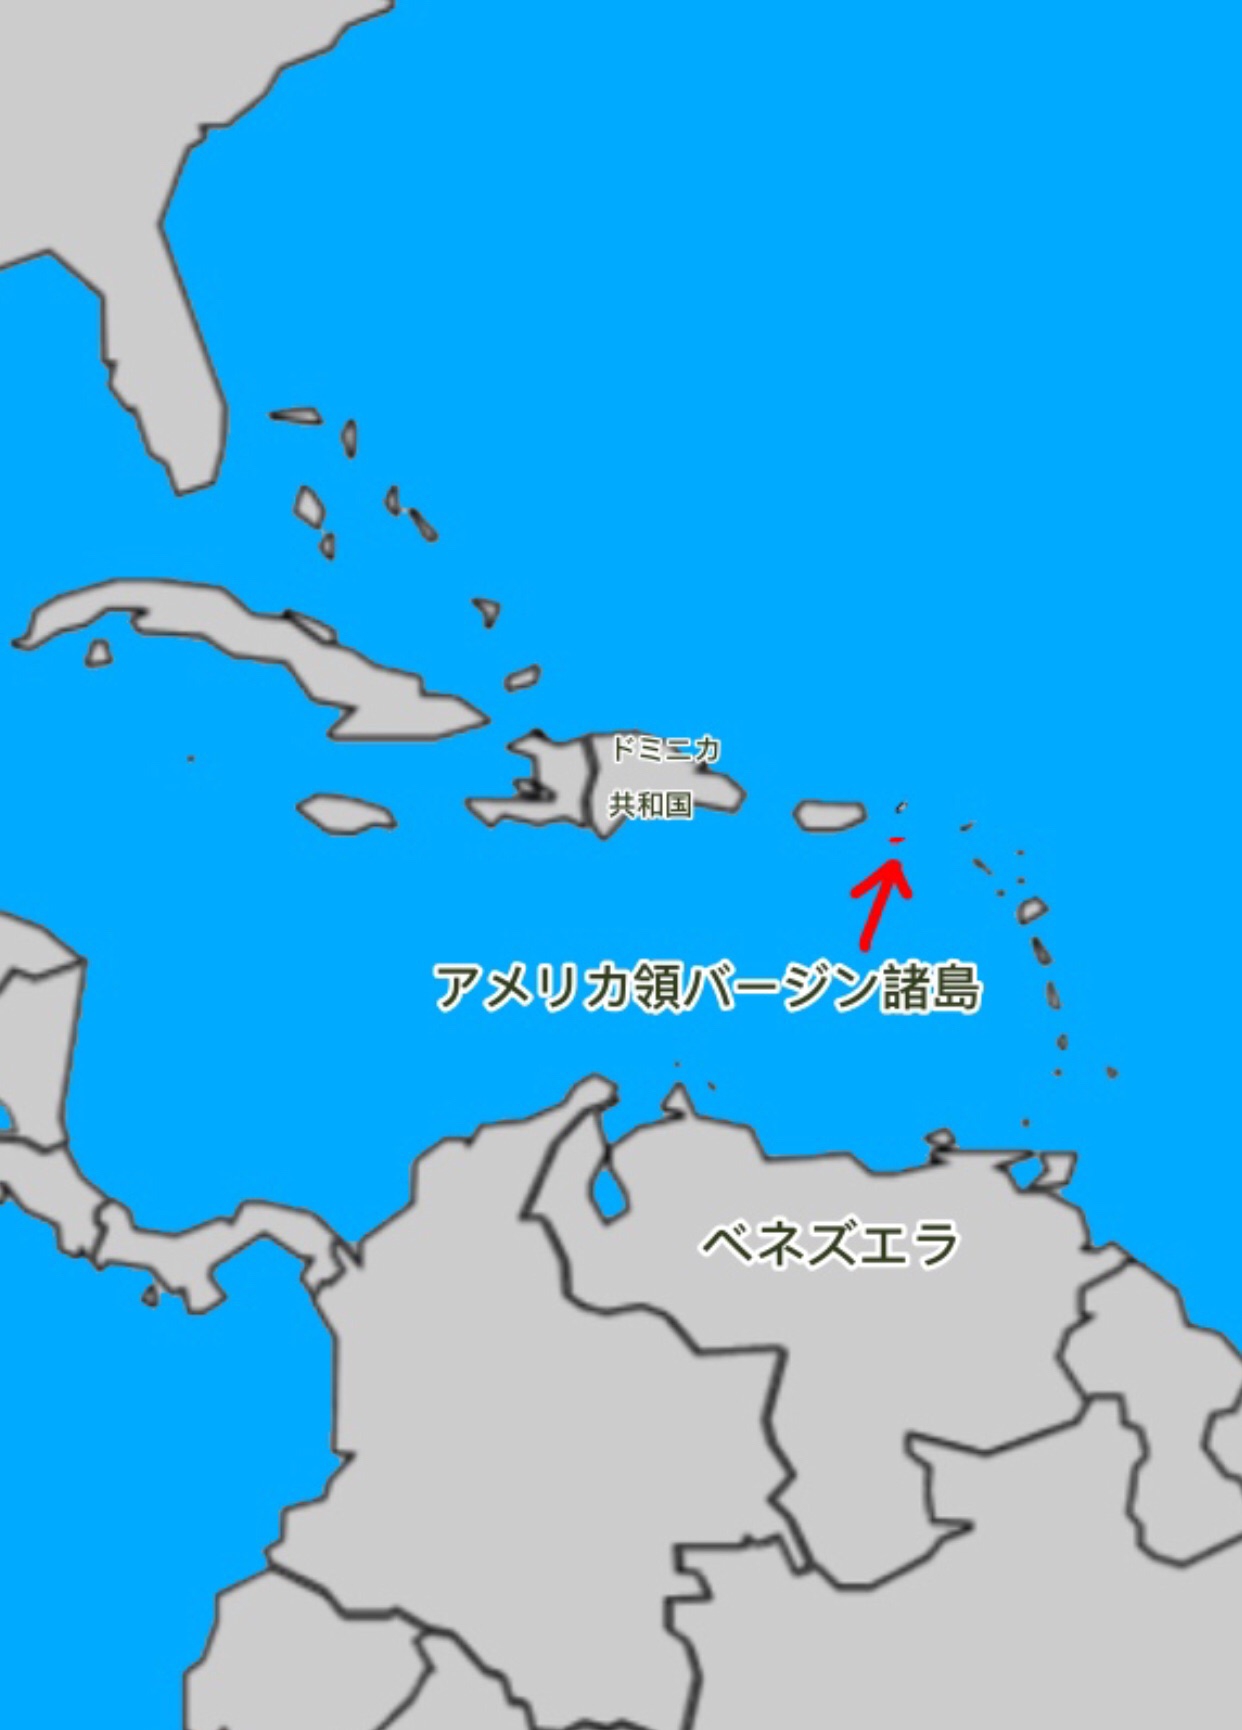 カリブ海領域アメリカ領バージン諸島 ラムコンシェルジュを目指して ラム酒素人からの航海日記